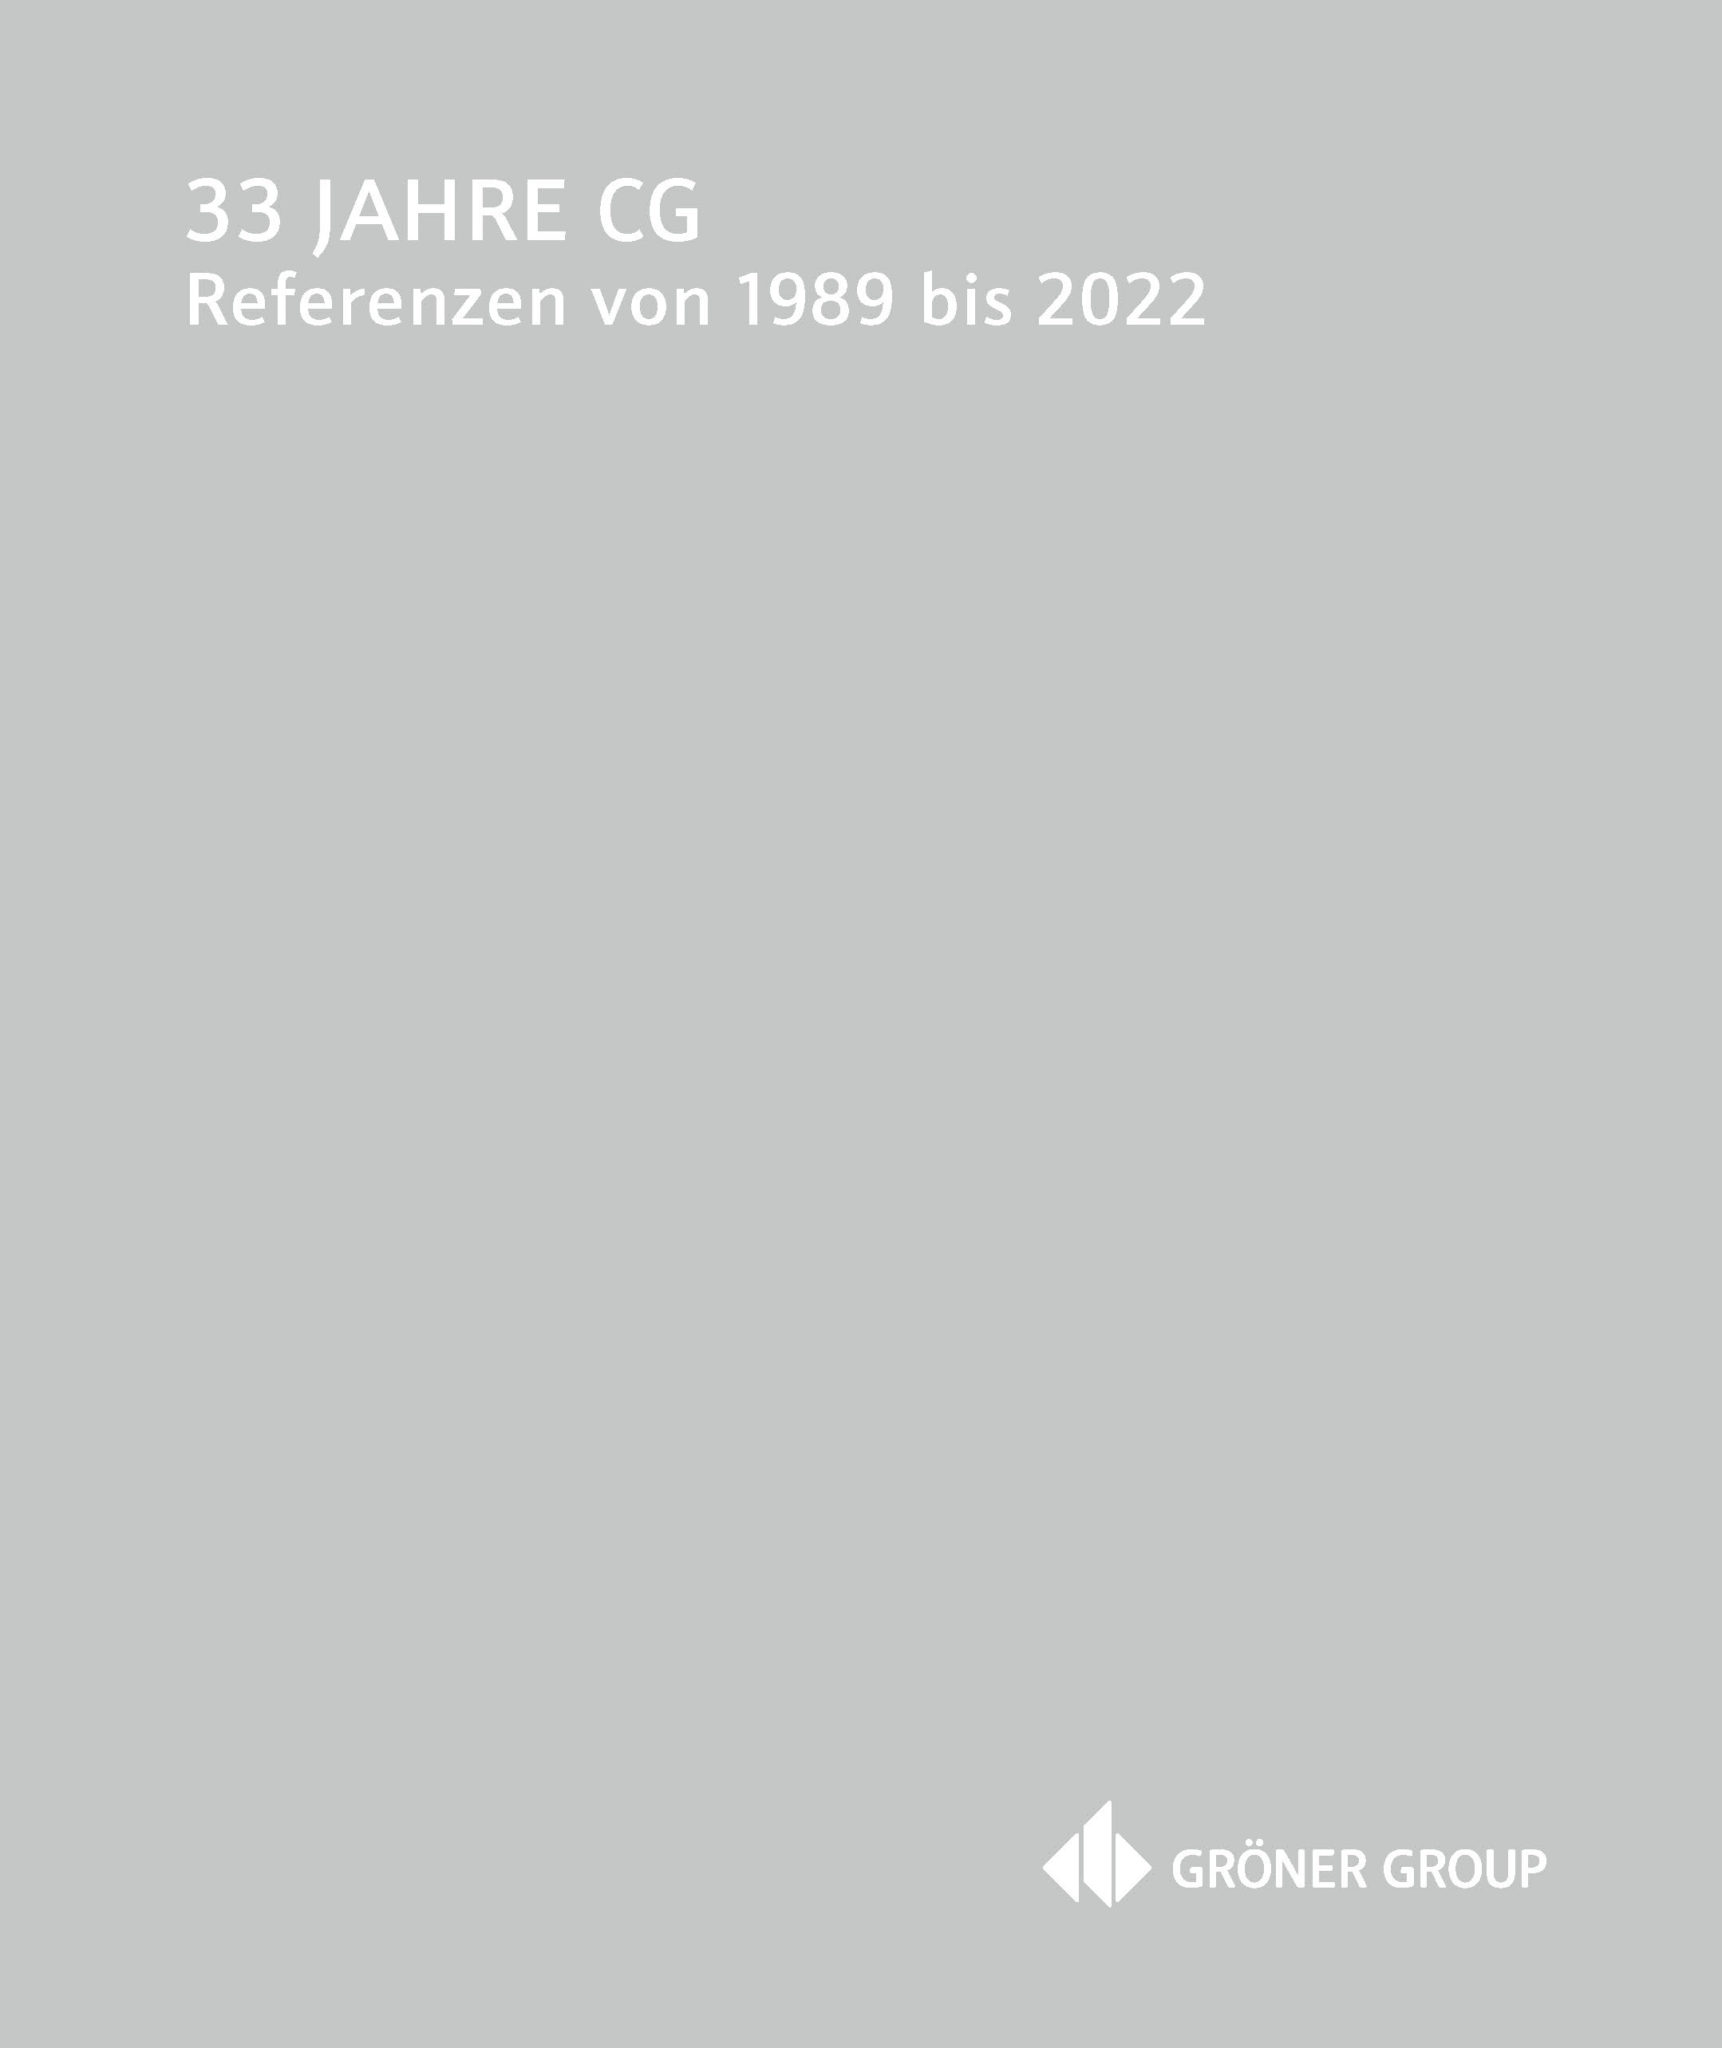 33 Jahre CG - Referenzen von 1989 bis 2022